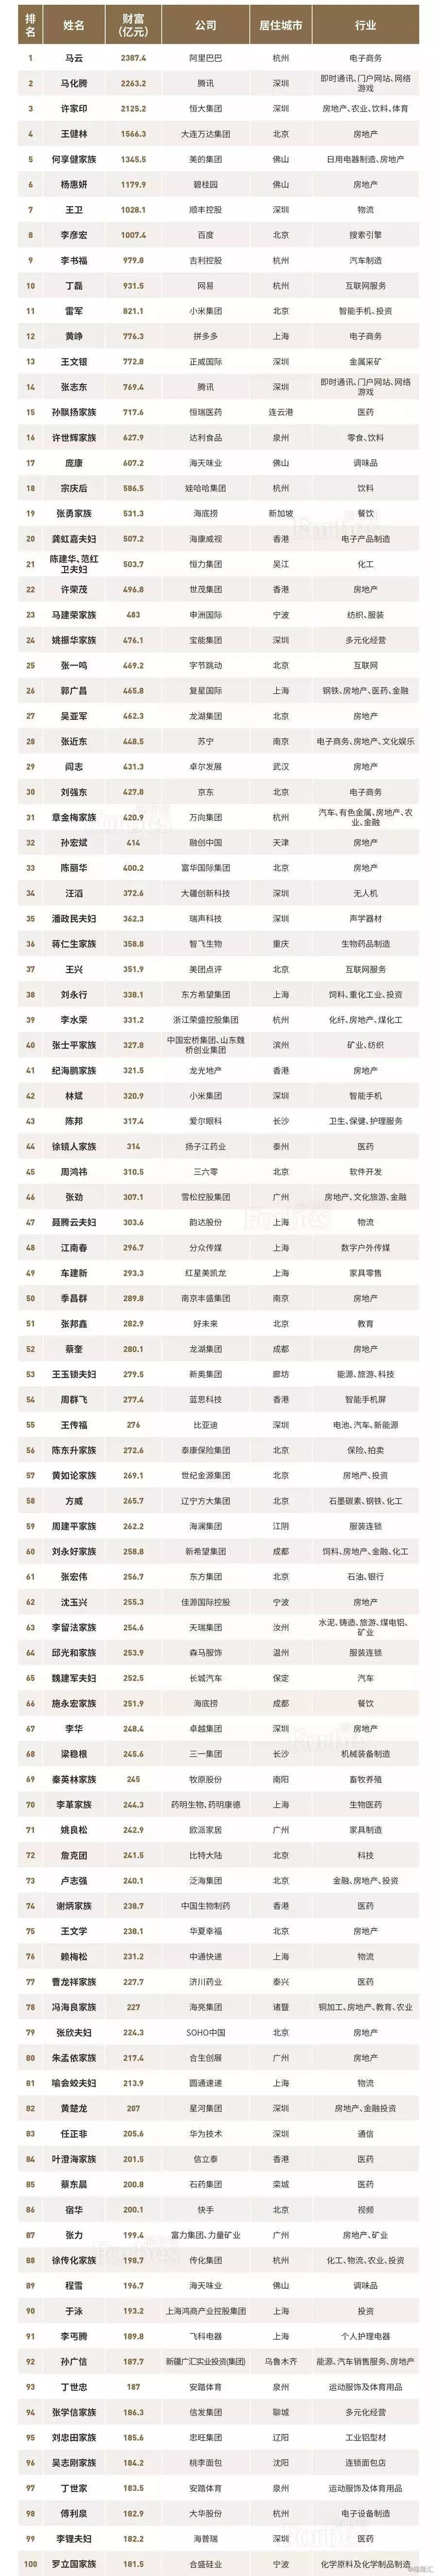 2018中国富豪排行榜_中国富豪榜2018排行榜解析：2018中国富豪榜十大排行